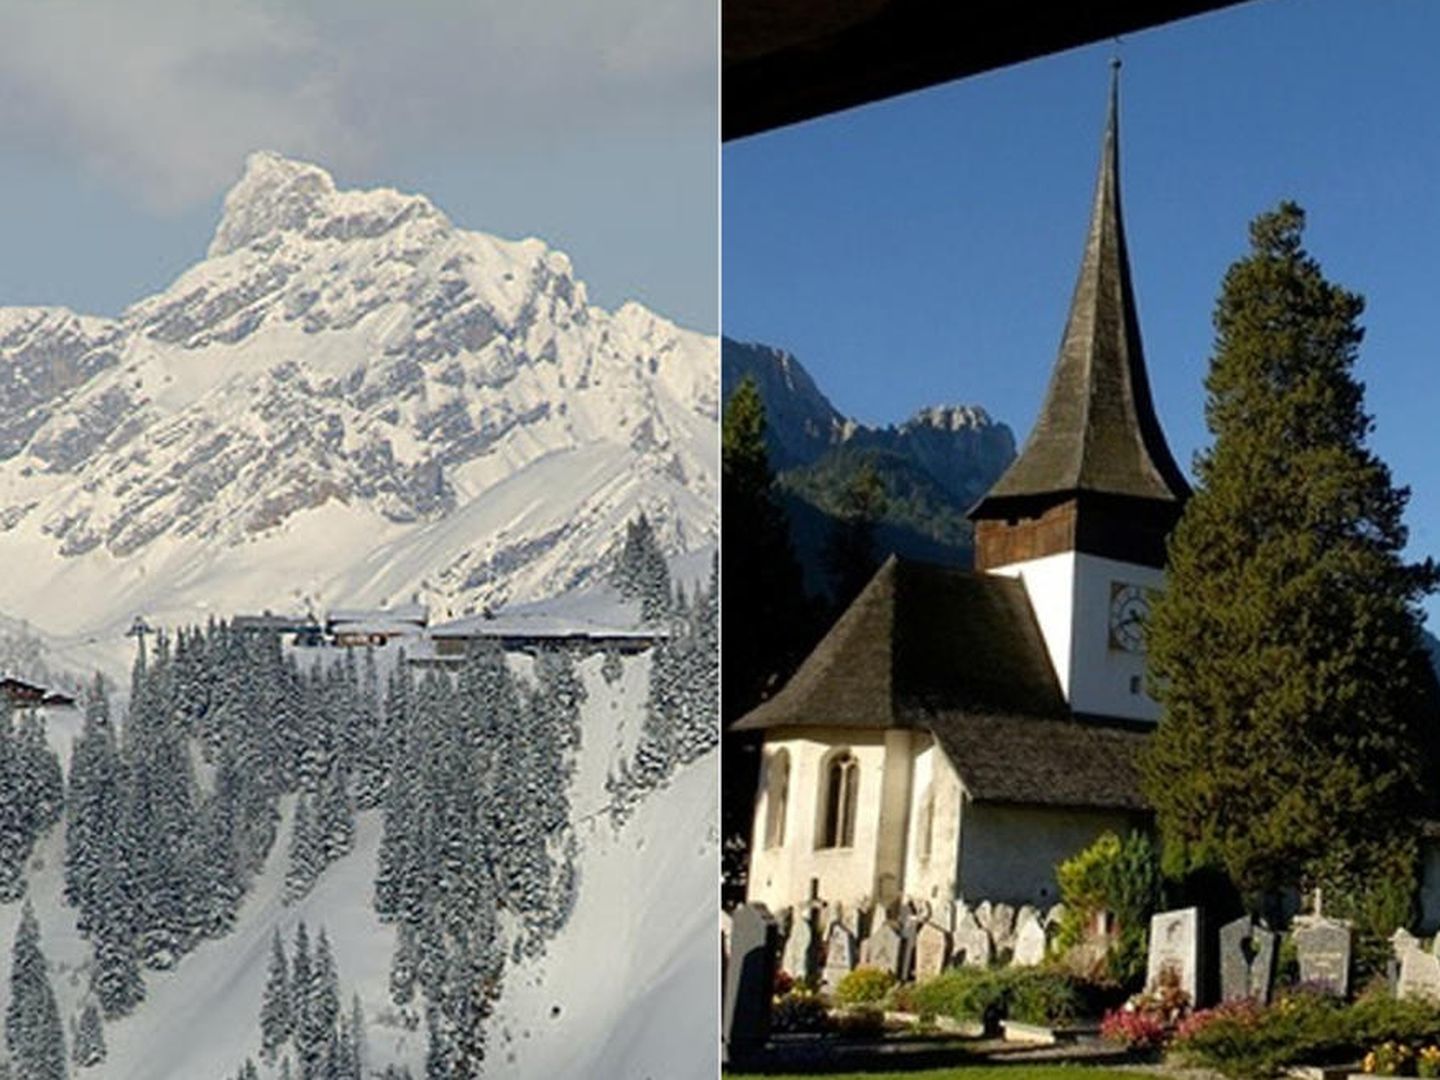 The Eagle Ski Club y la Iglesia de San Nicolás  Leer más:  Andrea Casiraghi y Tatiana se dan el segundo 'sí, quiero' en Gstaad, refugio de los Botín - Noticias de Casas Reales  http://bit.ly/1bi6y3D